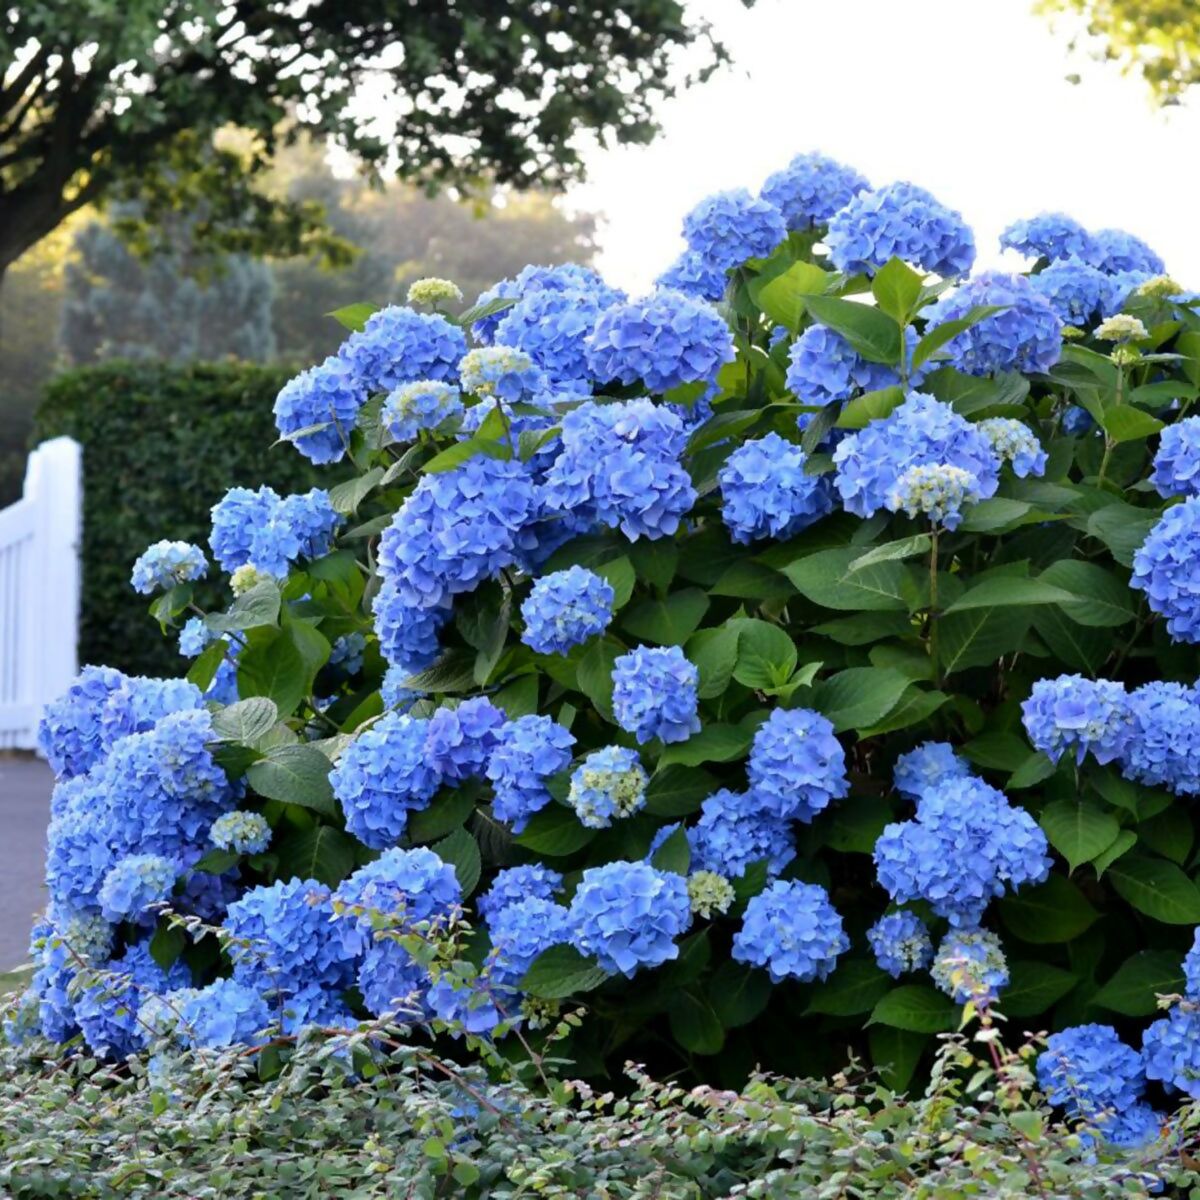 Hortensie Endless Summer® The kaufen online bei Pötschke Original, blau Gärtner